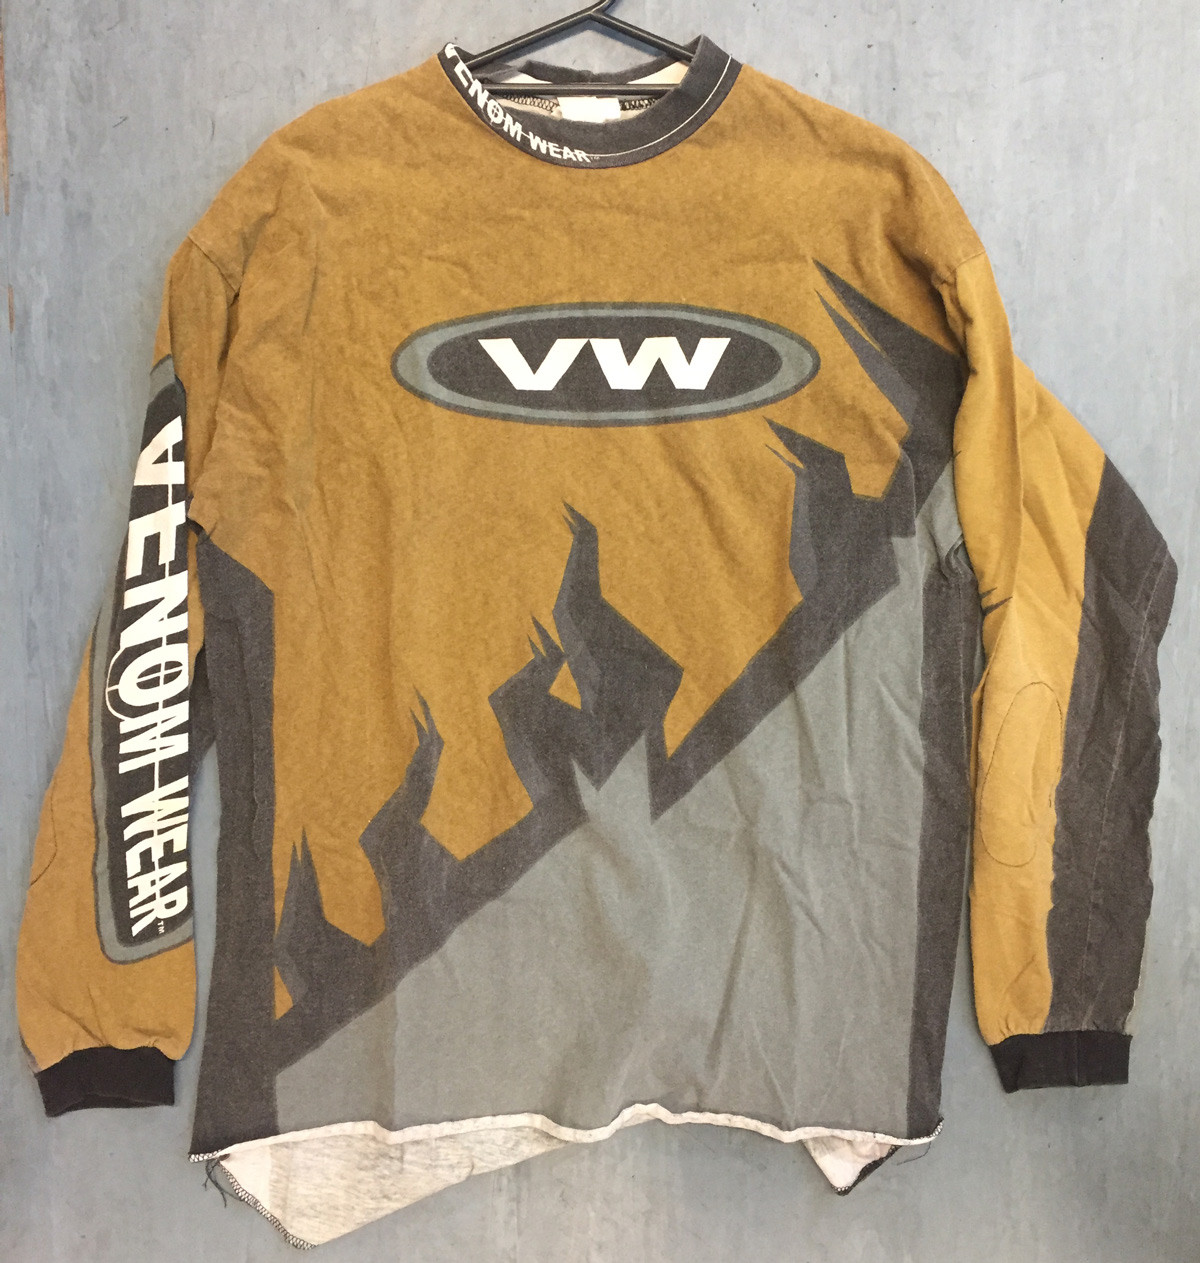 Venomwear - Used Jersey - 8/10 - Paintballshop.com